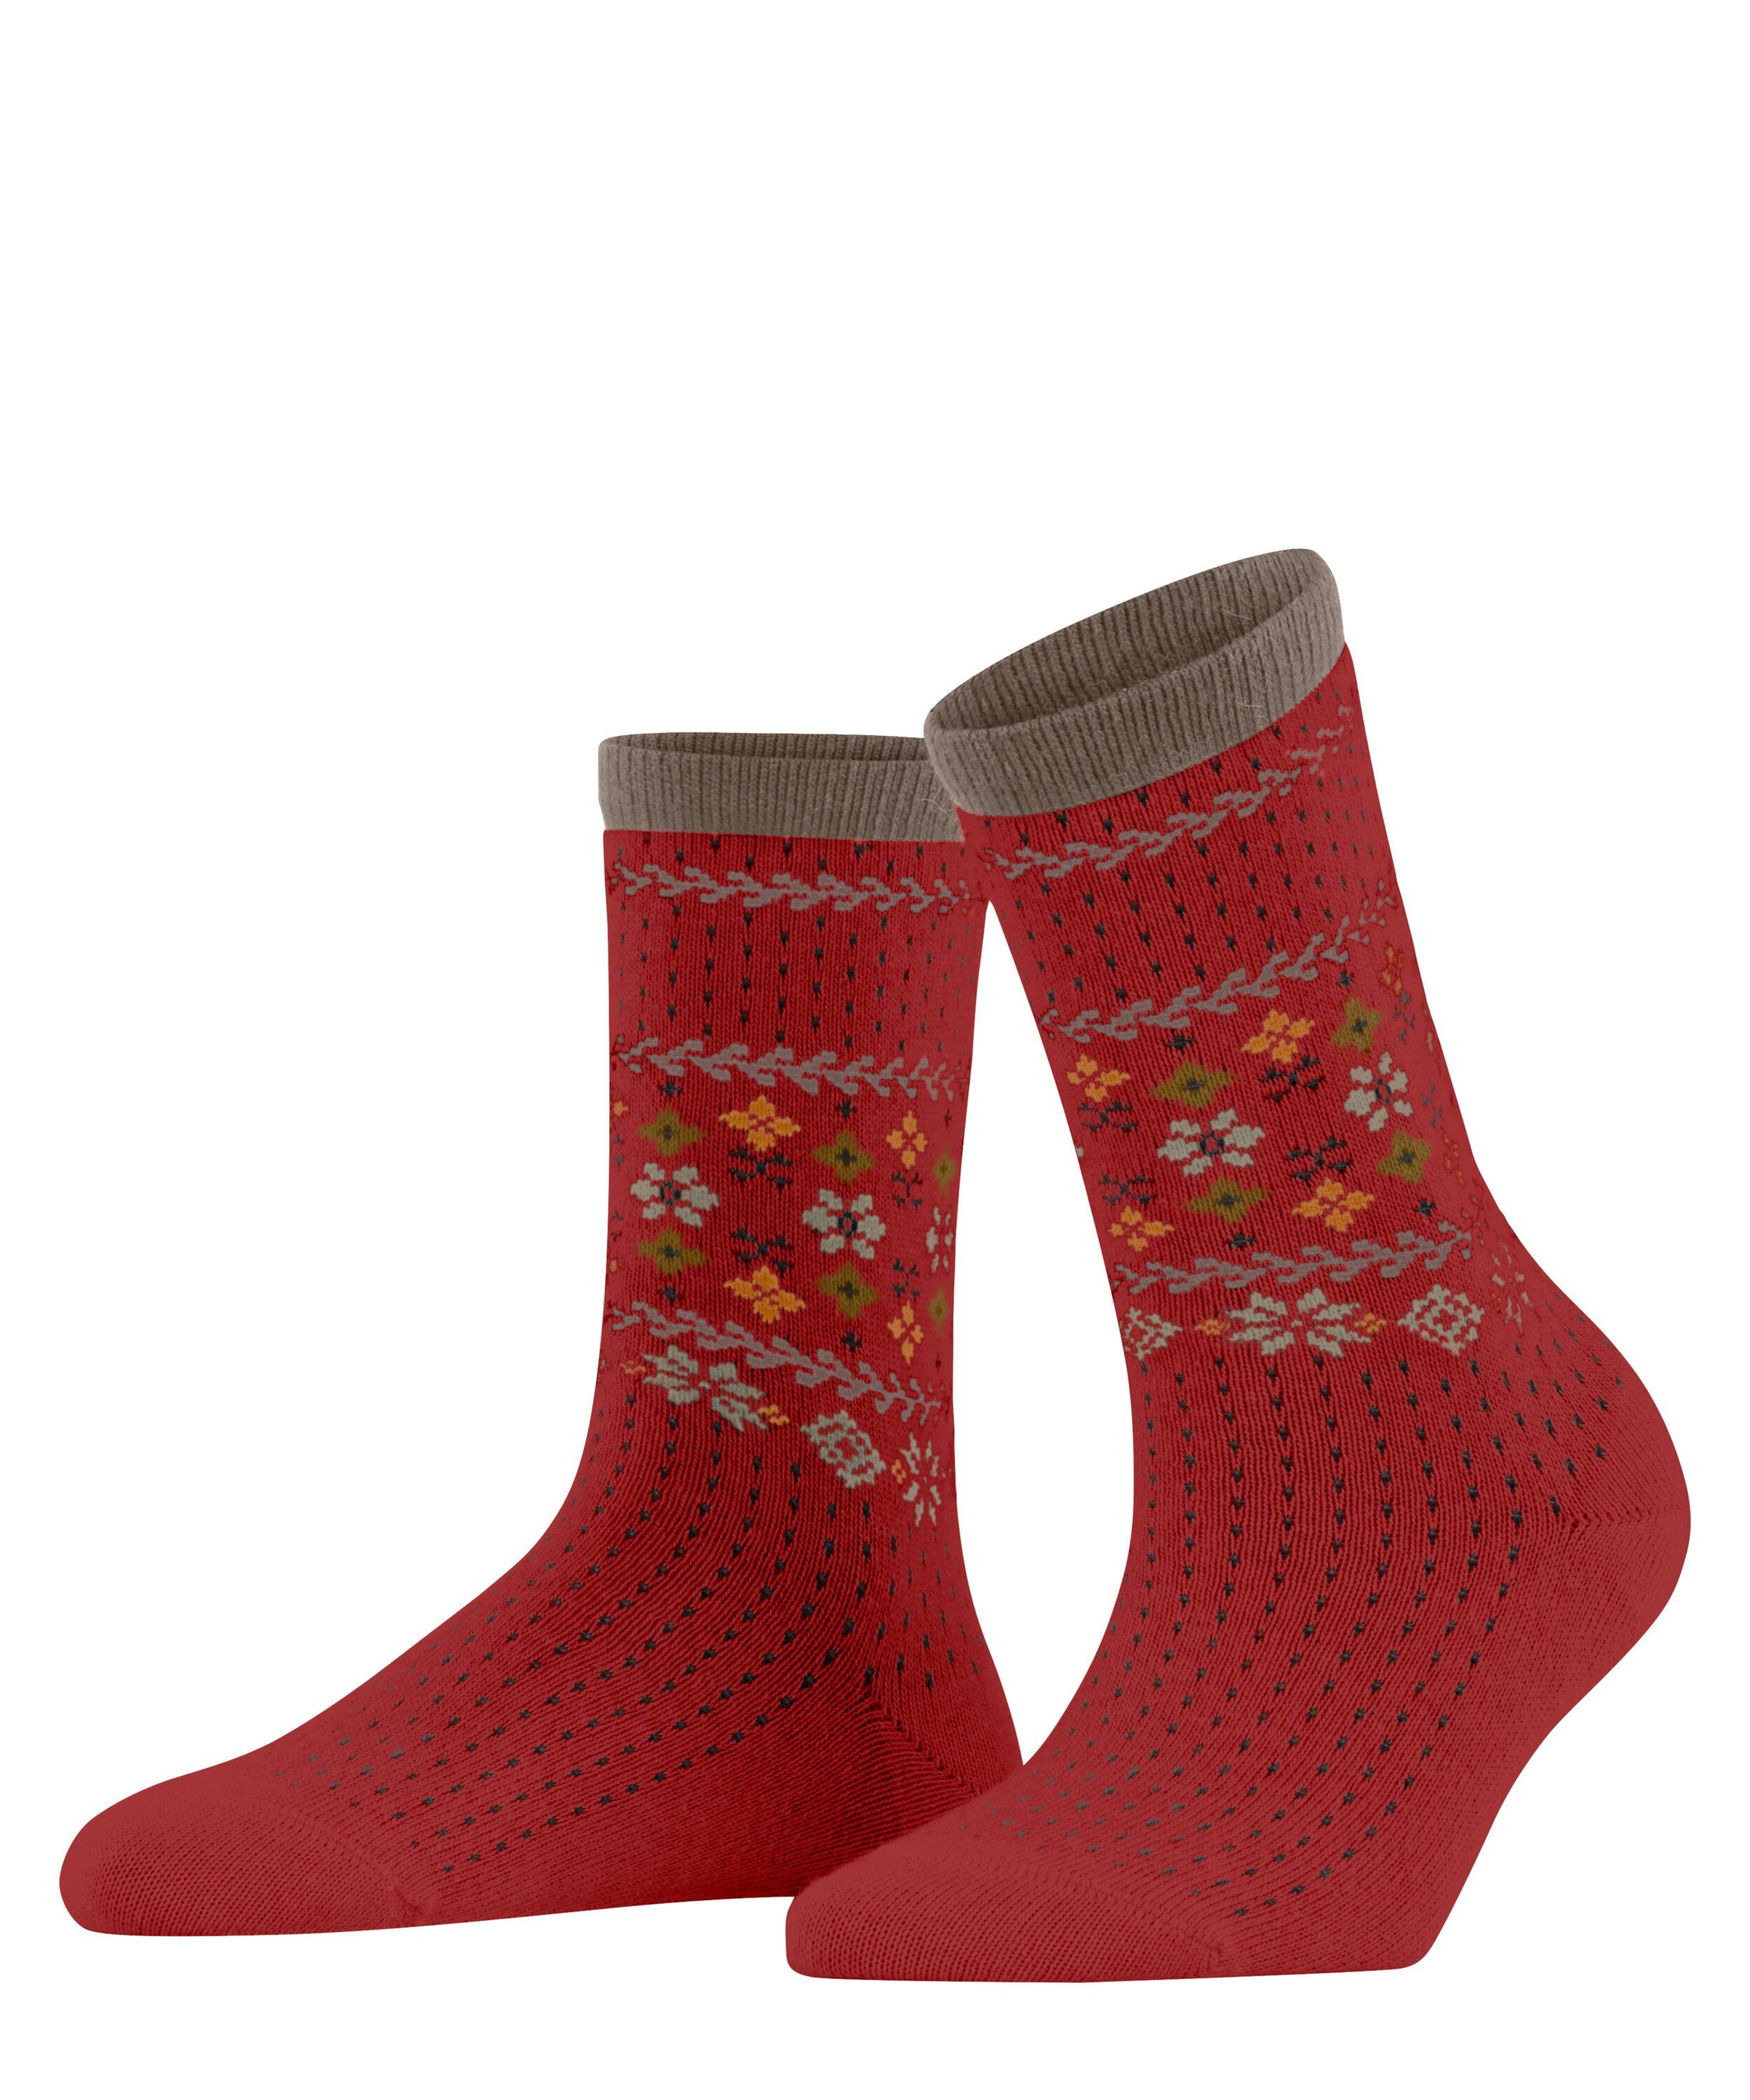 FALKE Socken Norway Love (1-Paar) online kaufen | OTTO